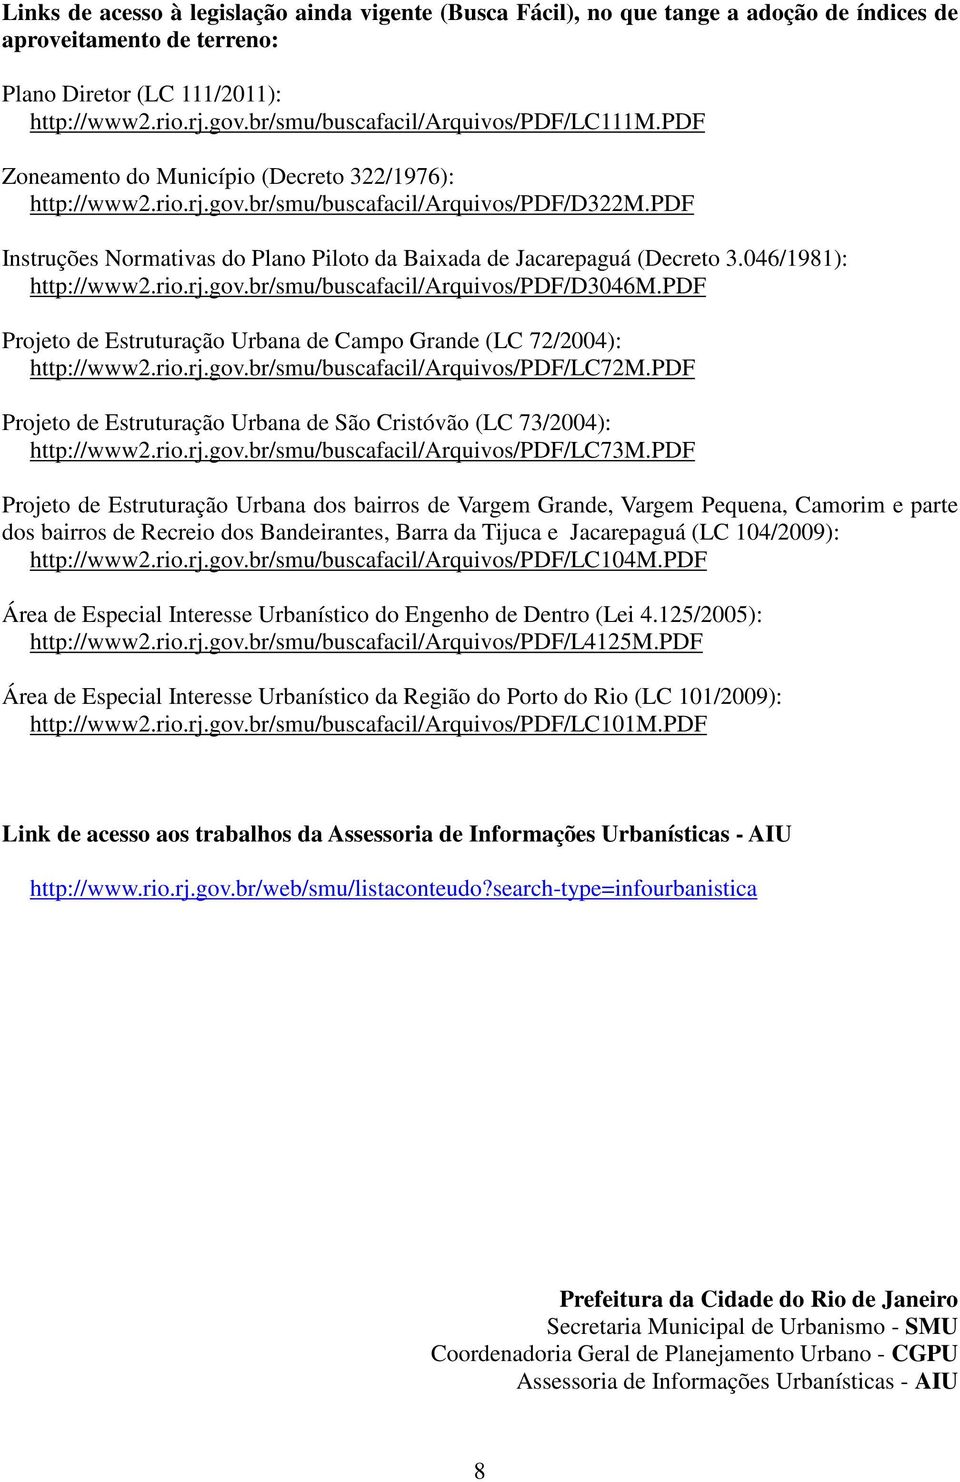 pdf Instruções Normativas do Plano Piloto da Baixada de Jacarepaguá (Decreto 3.046/1981): http://www2.rio.rj.gov.br/smu/buscafacil/arquivos/pdf/d3046m.